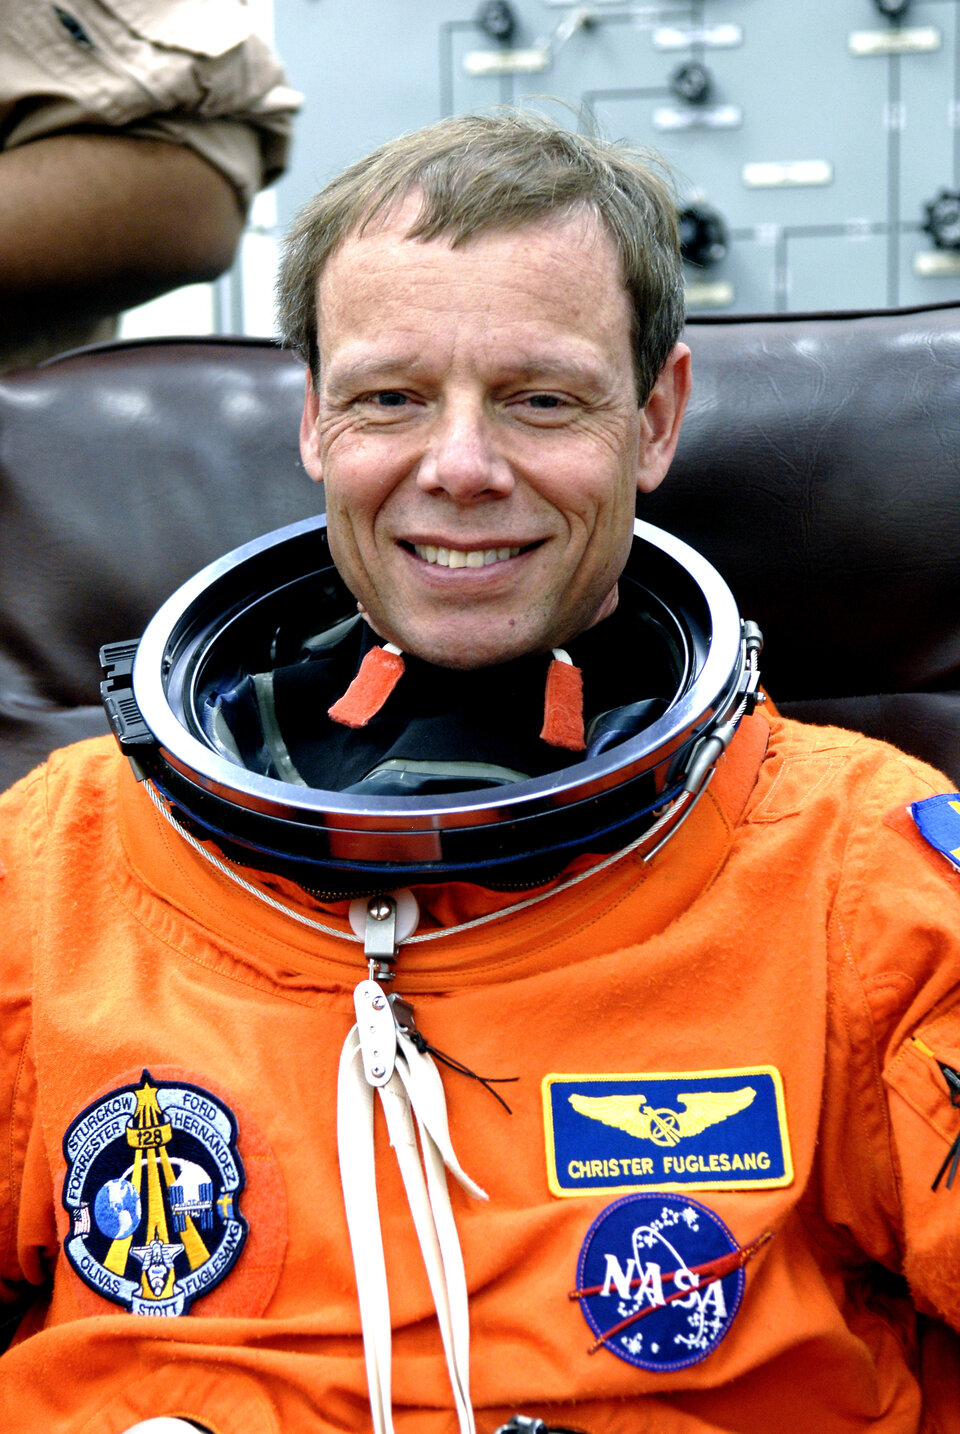 Christer Fuglesang, Astronaut suédois de l'ESA